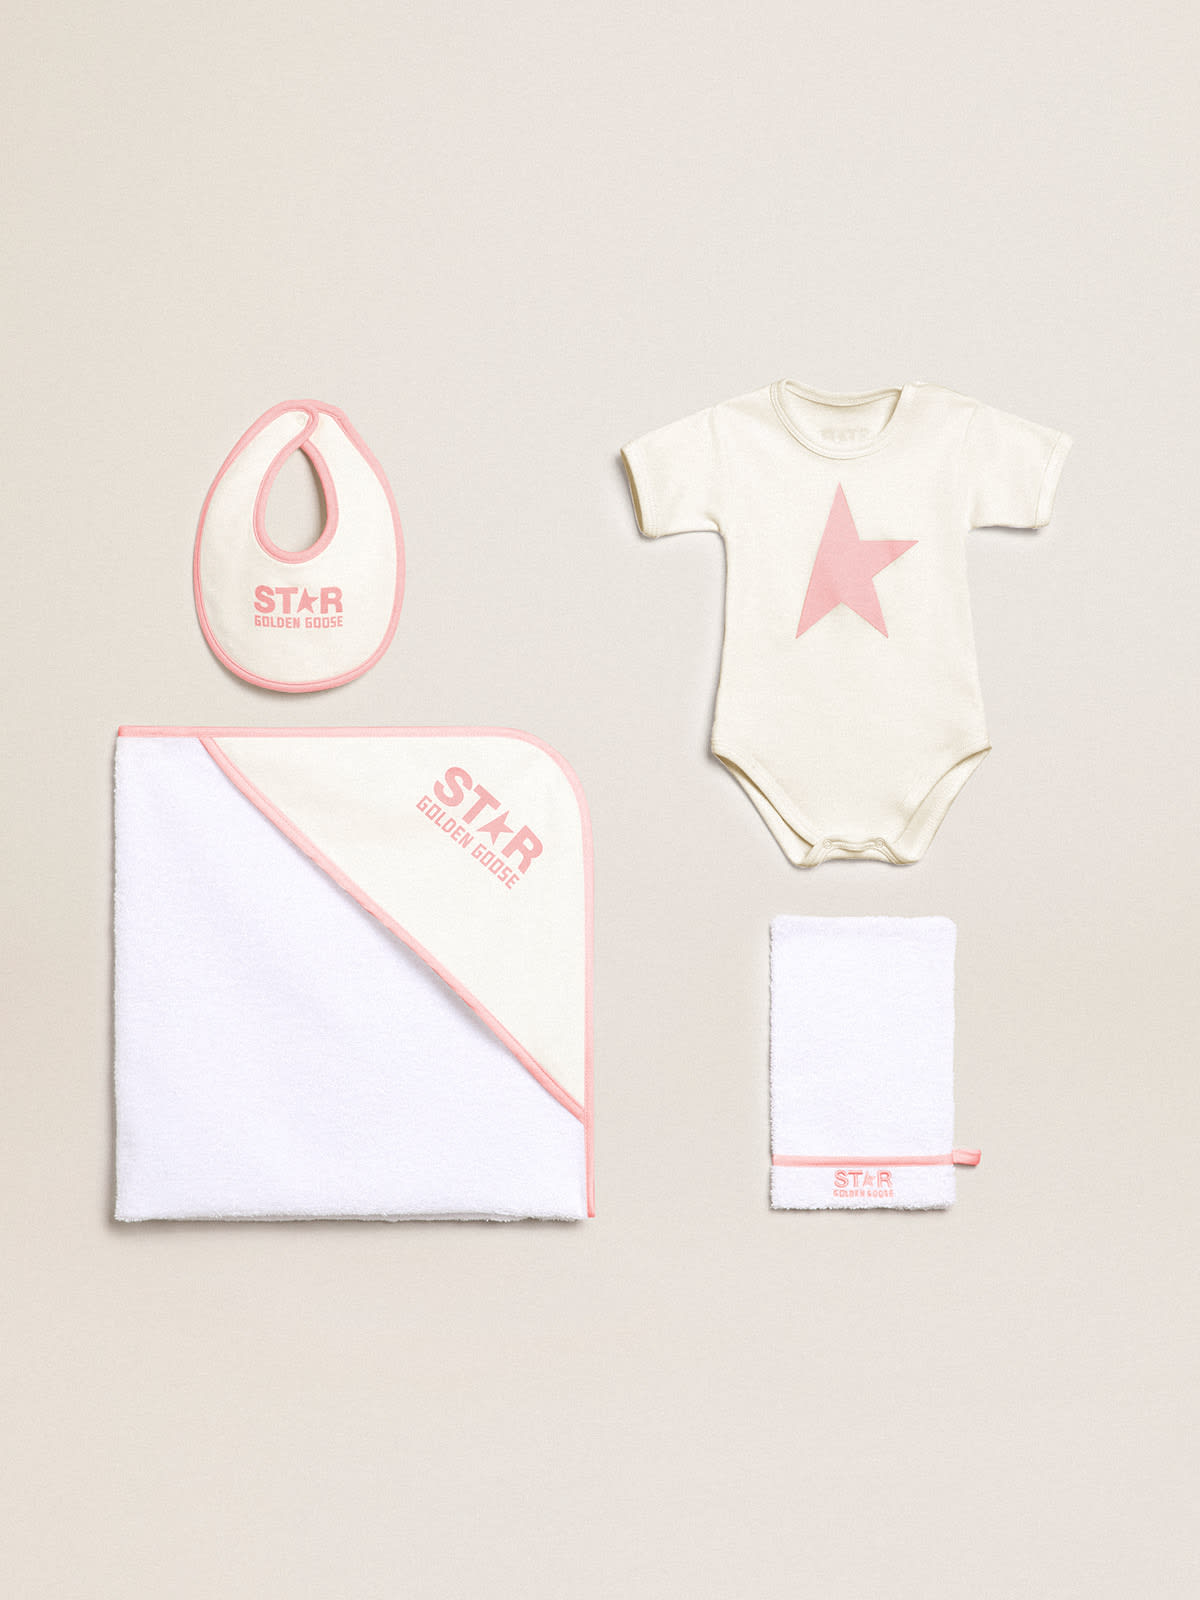 Golden Goose - Paquete regalo con conjunto de baño de la colección Star en color blanco y blanco leche con perfiles y logotipo rosa en contraste in 